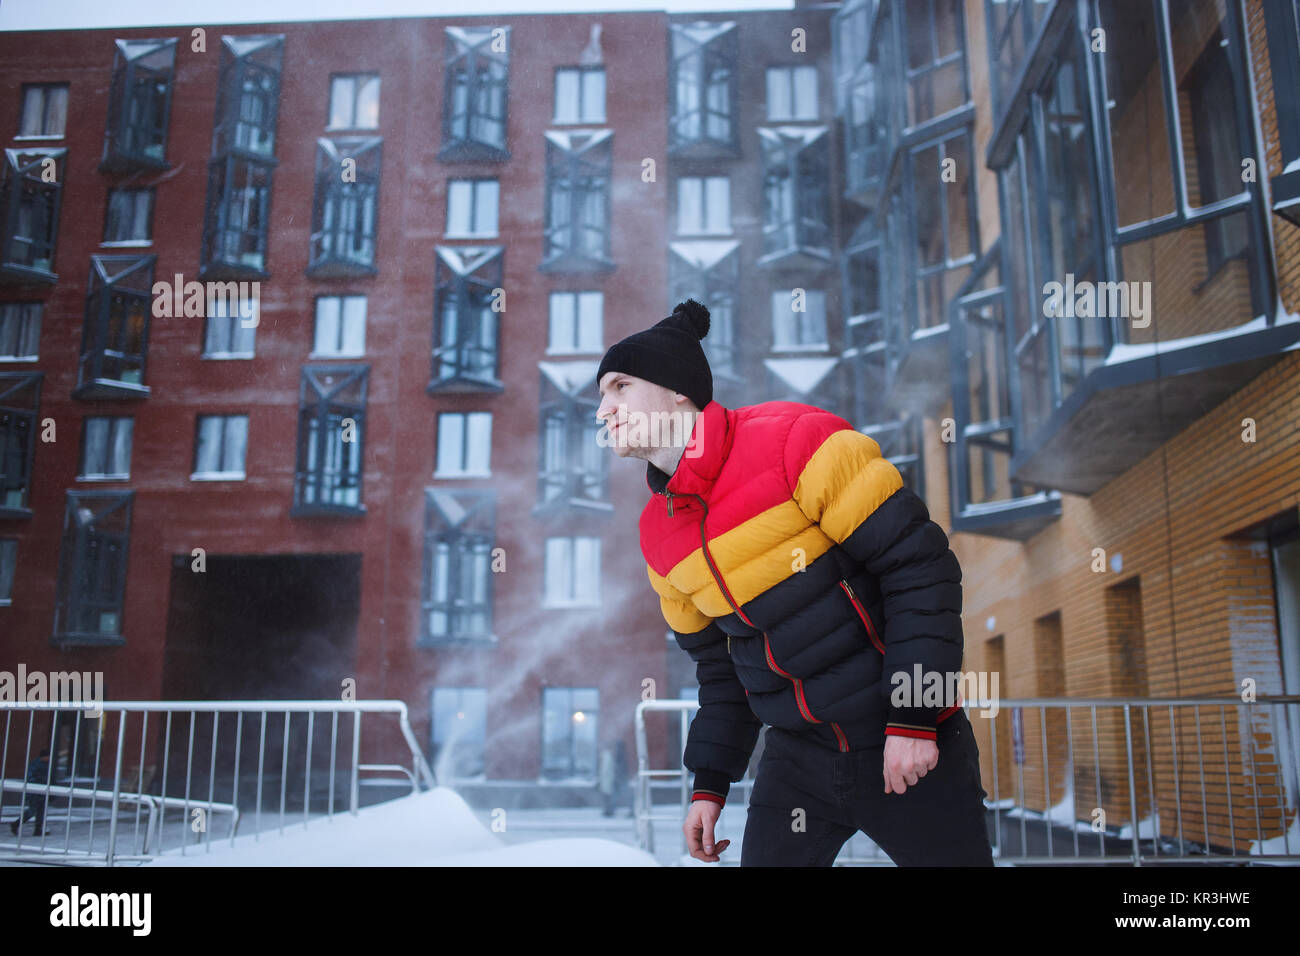 Homme fort avec des vêtements d'hiver dans la neige, bénéficie d'froid, neige, blizzard. Fond de cour urbaine Banque D'Images